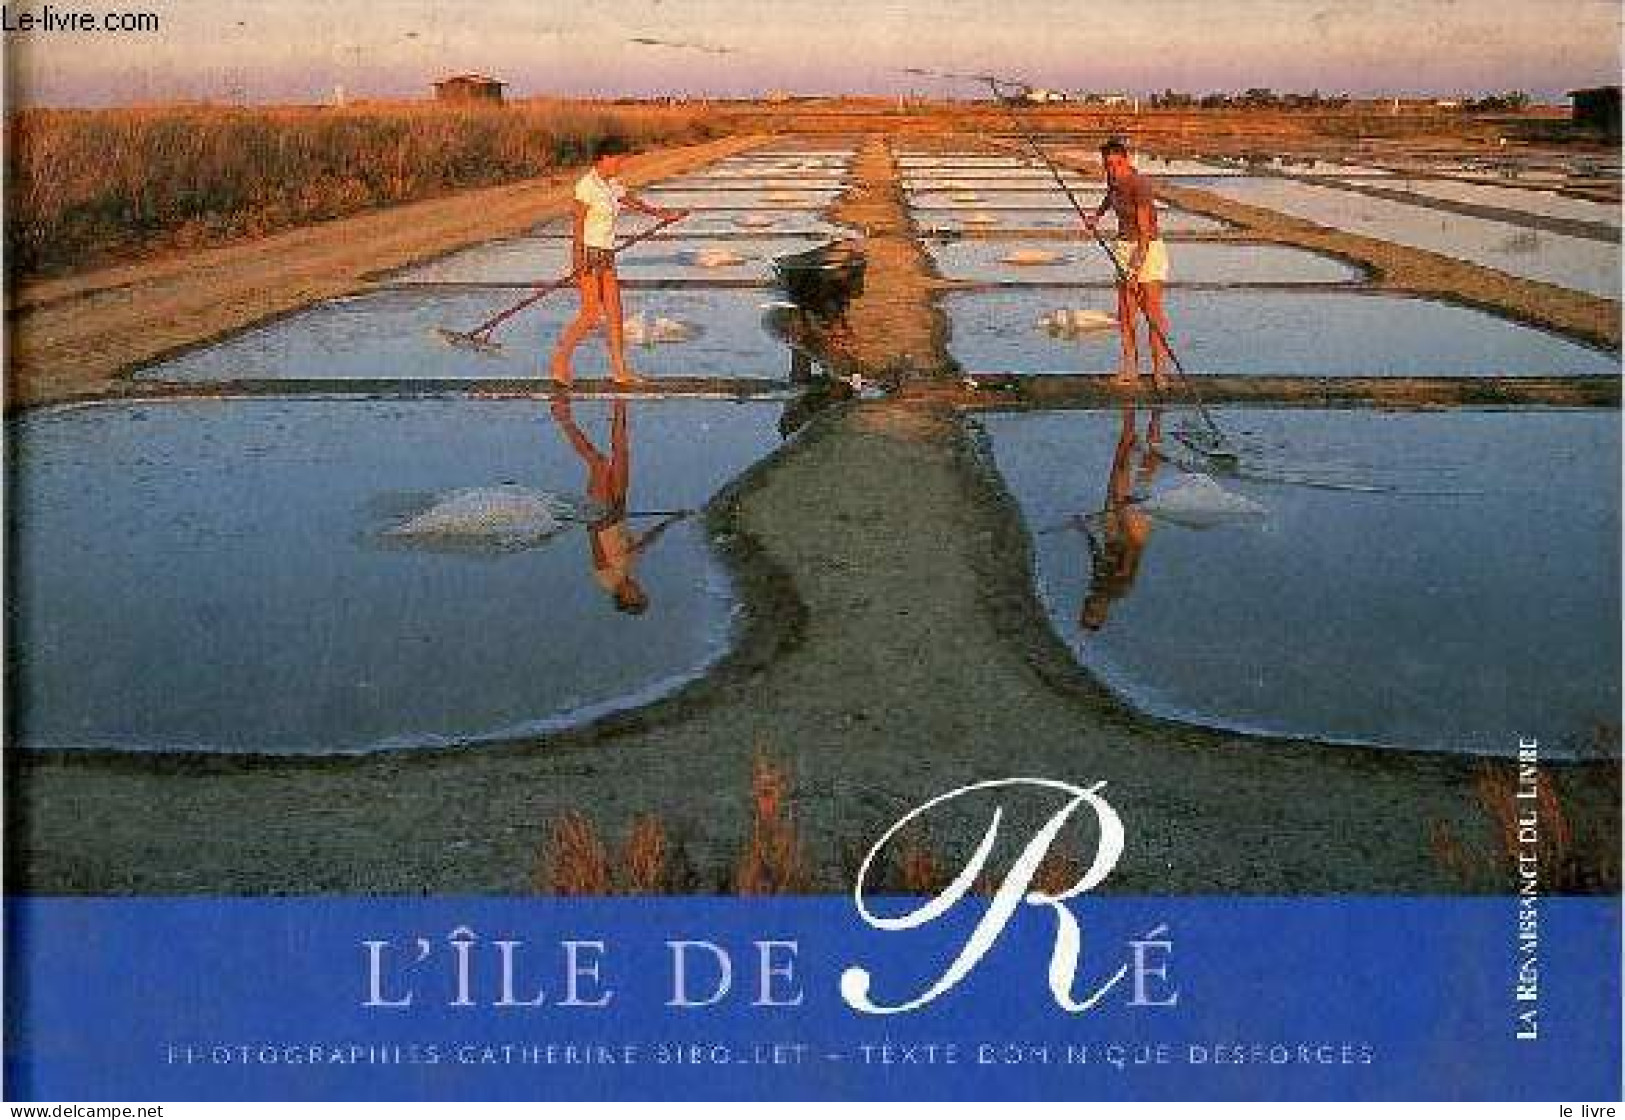 L'île De Ré - Collection L'esprit Des Lieux. - Desforges Dominique & Bibollet Catherine - 2004 - Poitou-Charentes